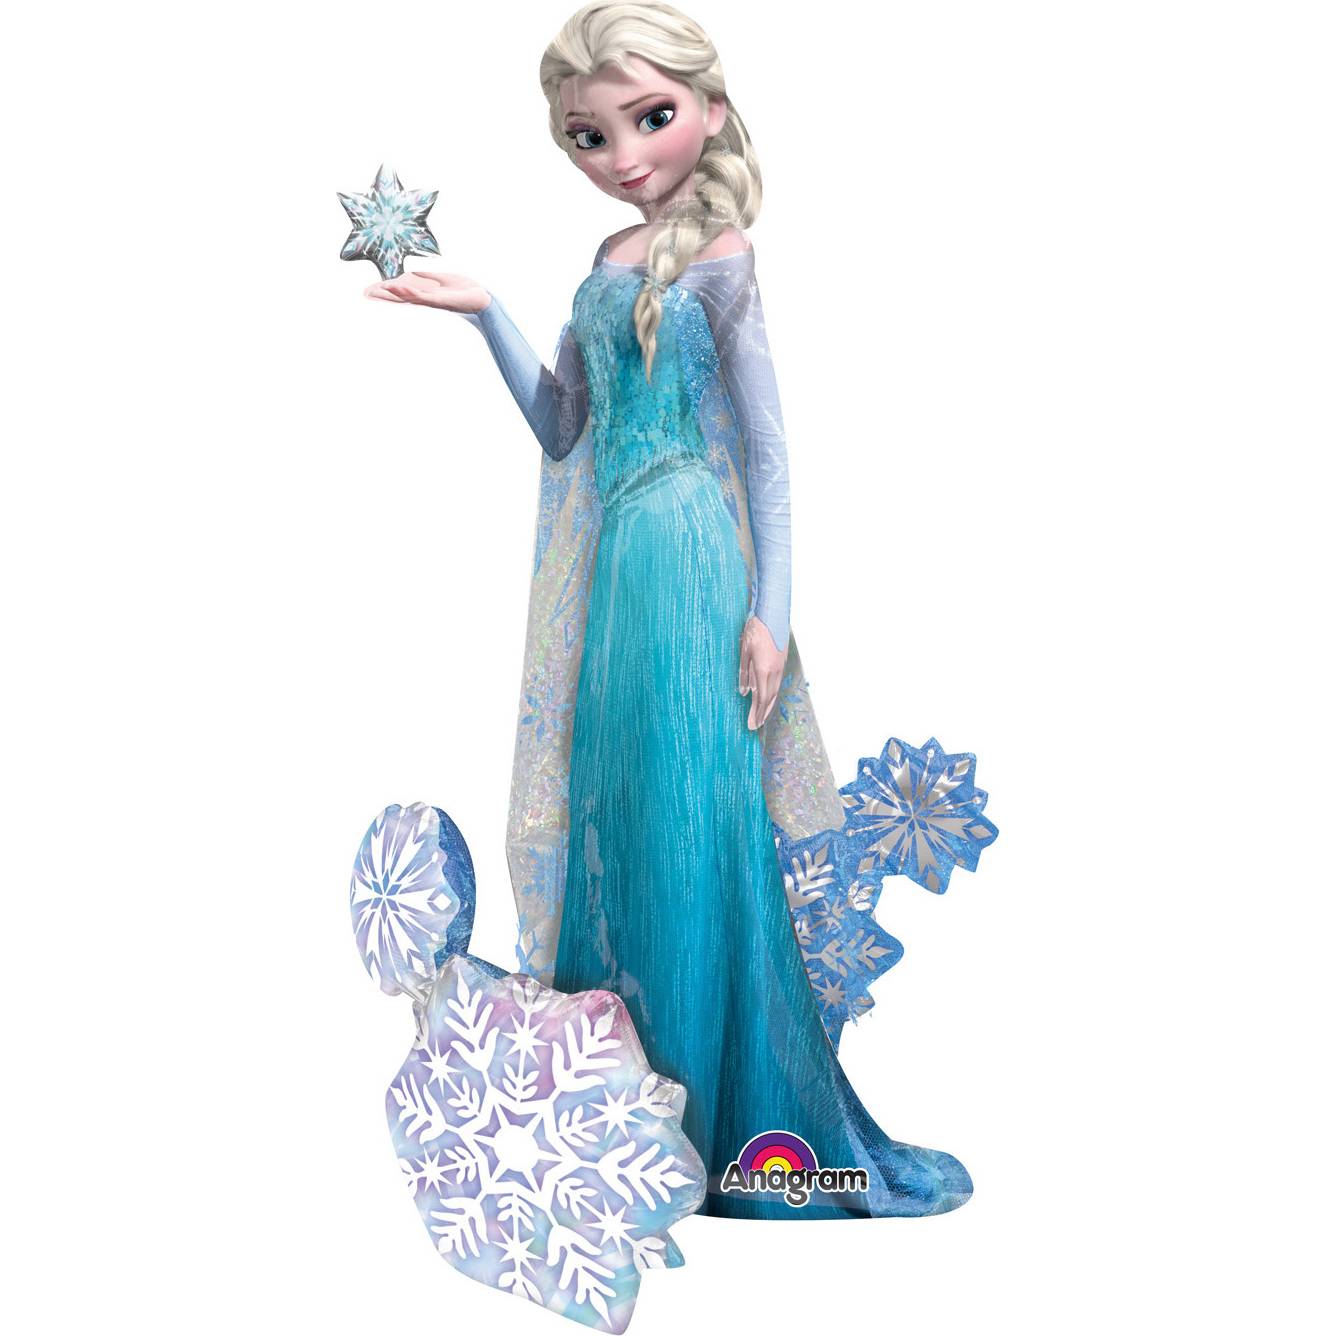 Obří fóliový balónek 144x88cm Frozen - Ledové království Elsa - Amscan